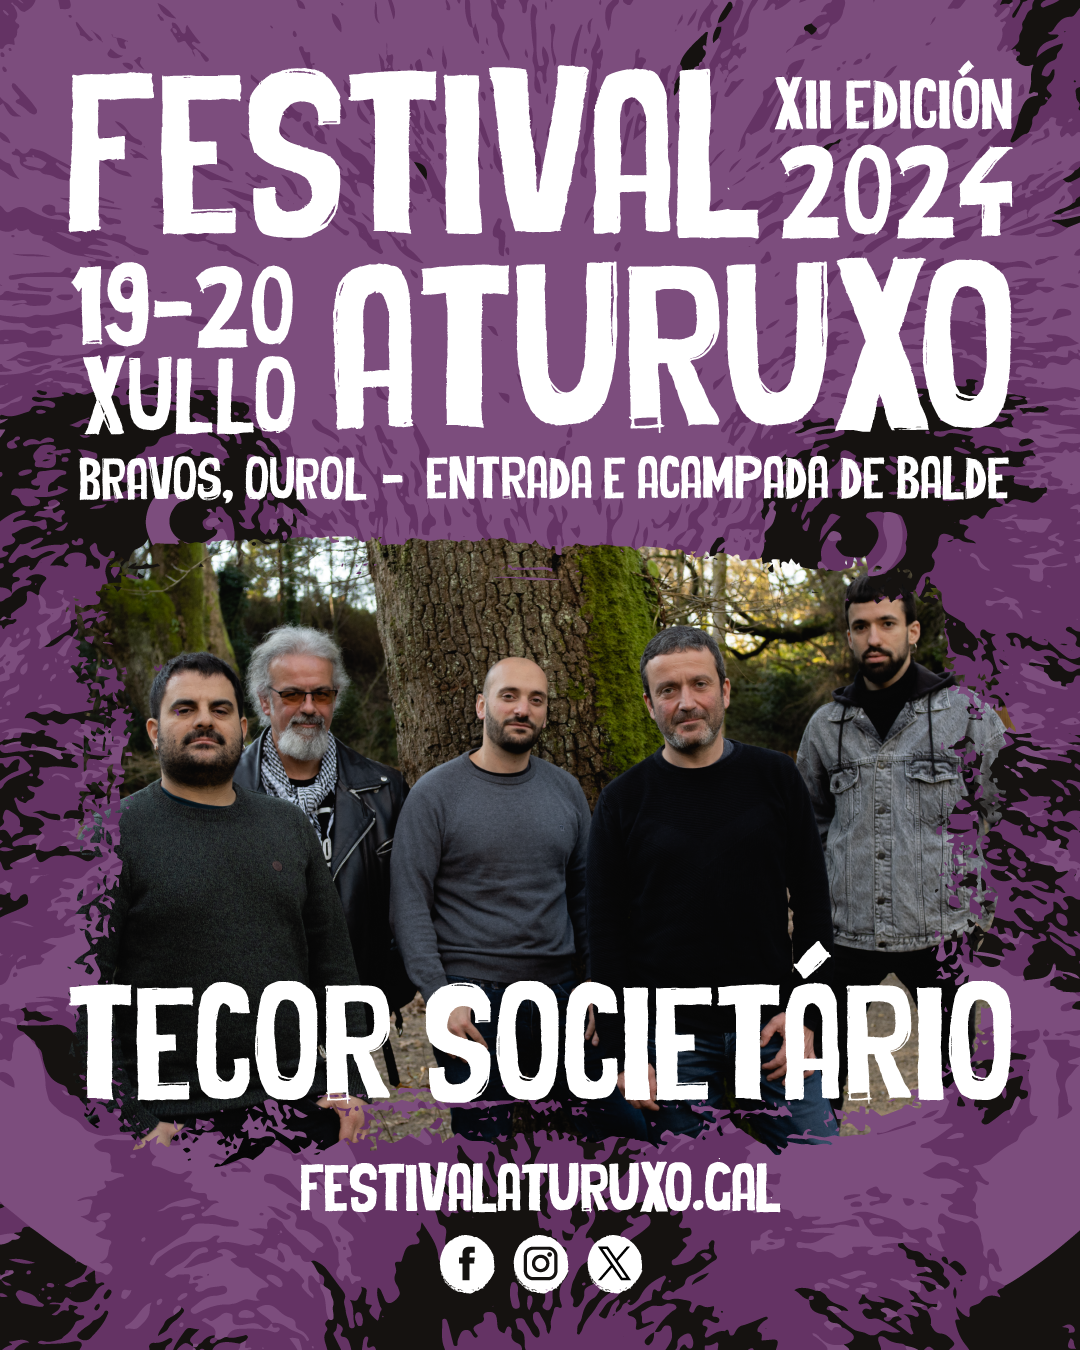 Tecor Societário - Festival Aturuxo 2024 - XII Edición